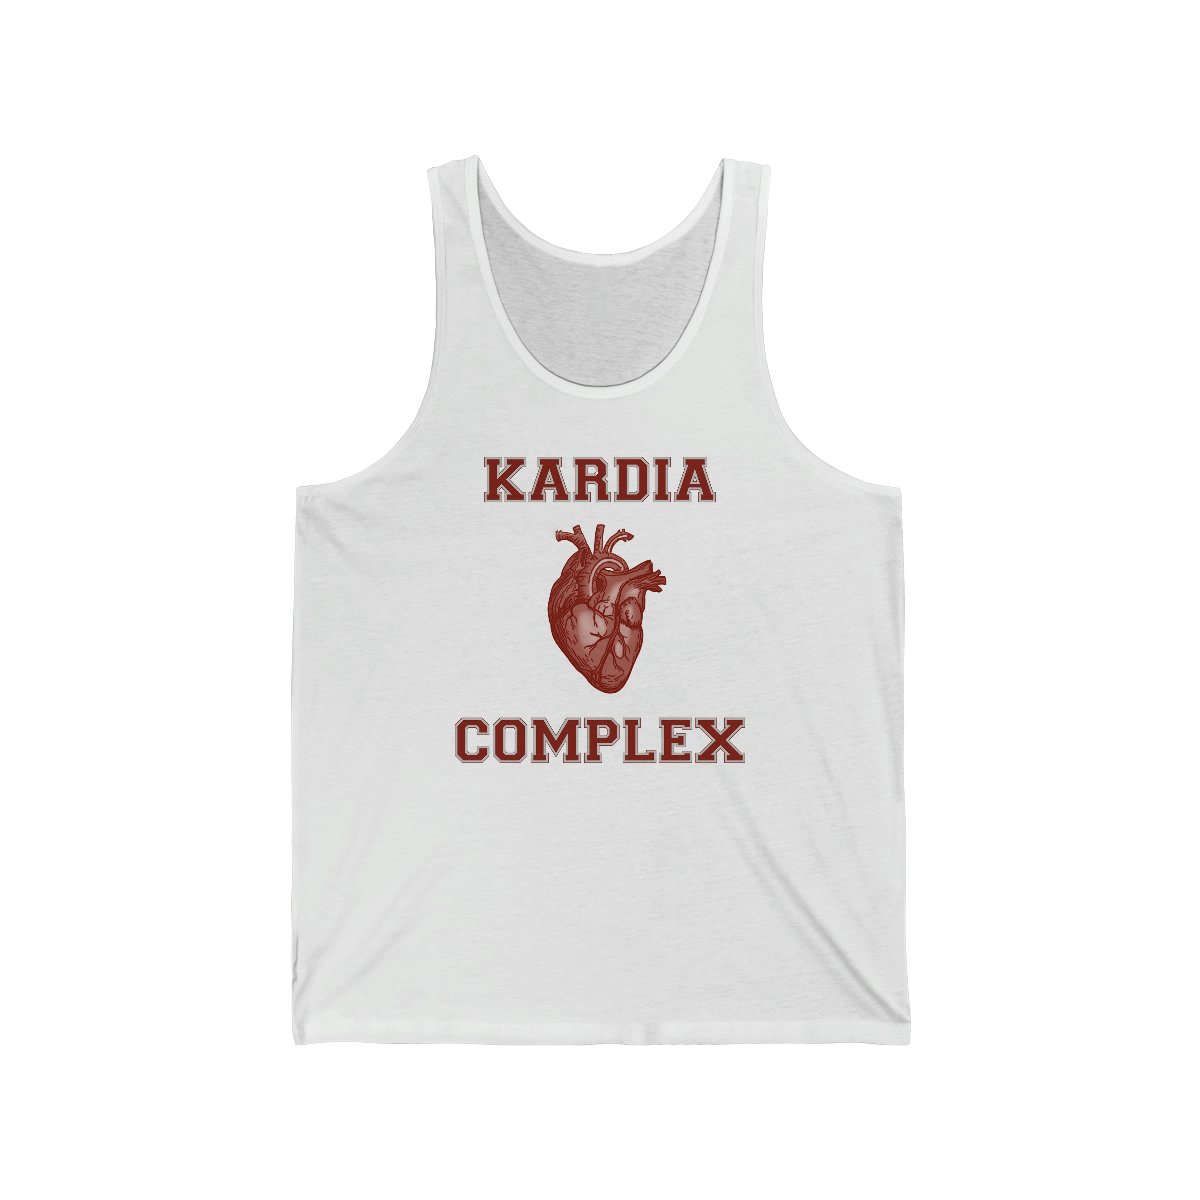 Kardia Complex Tank Top